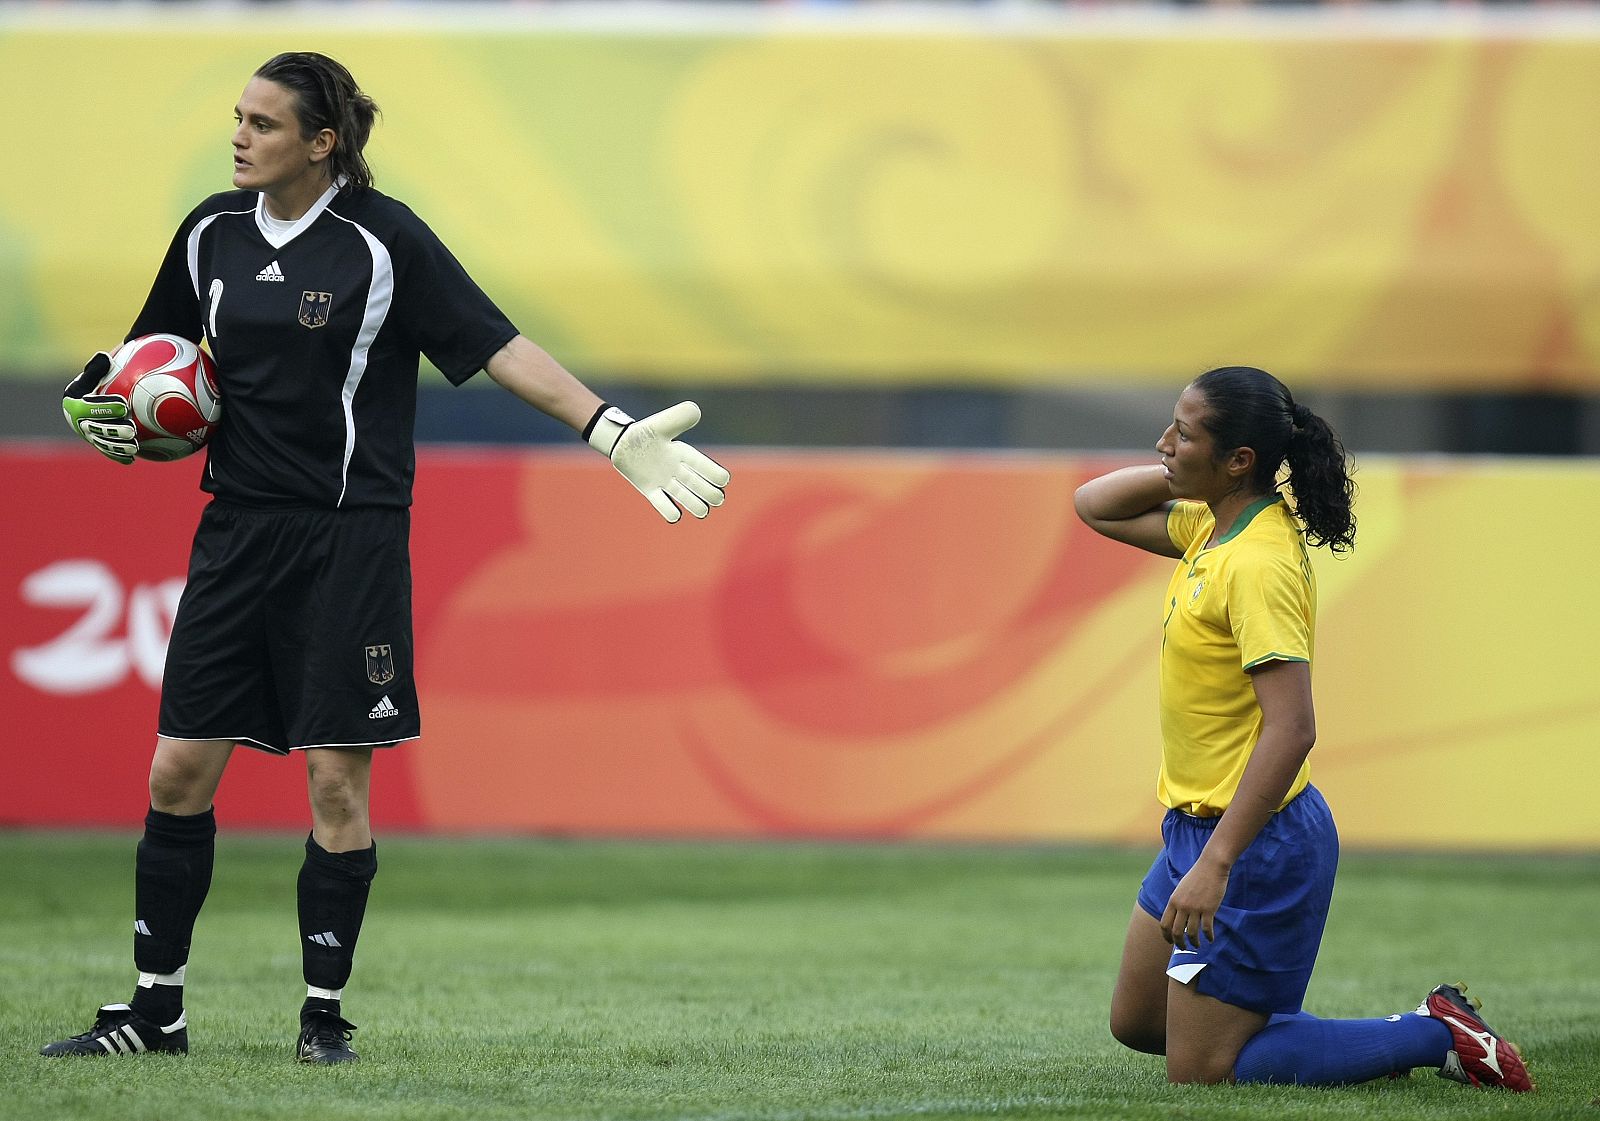 Alemania-Brasil, empate sin goles